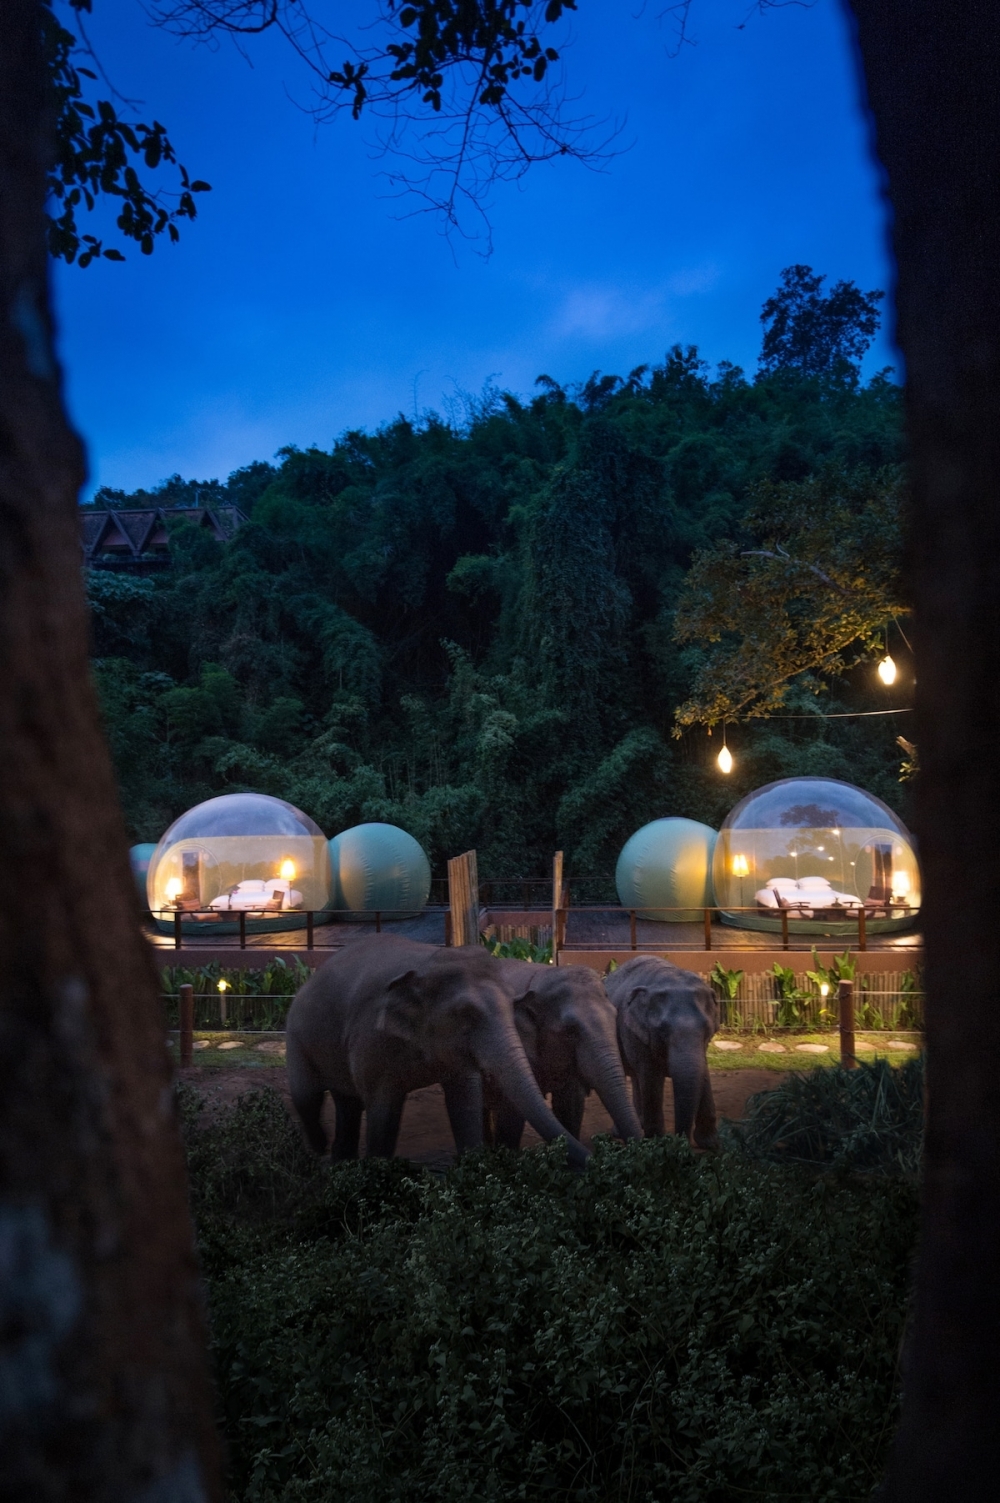 Phòng ngủ bong bóng, thức dậy giữa rừng và “chào buổi sáng” với voi